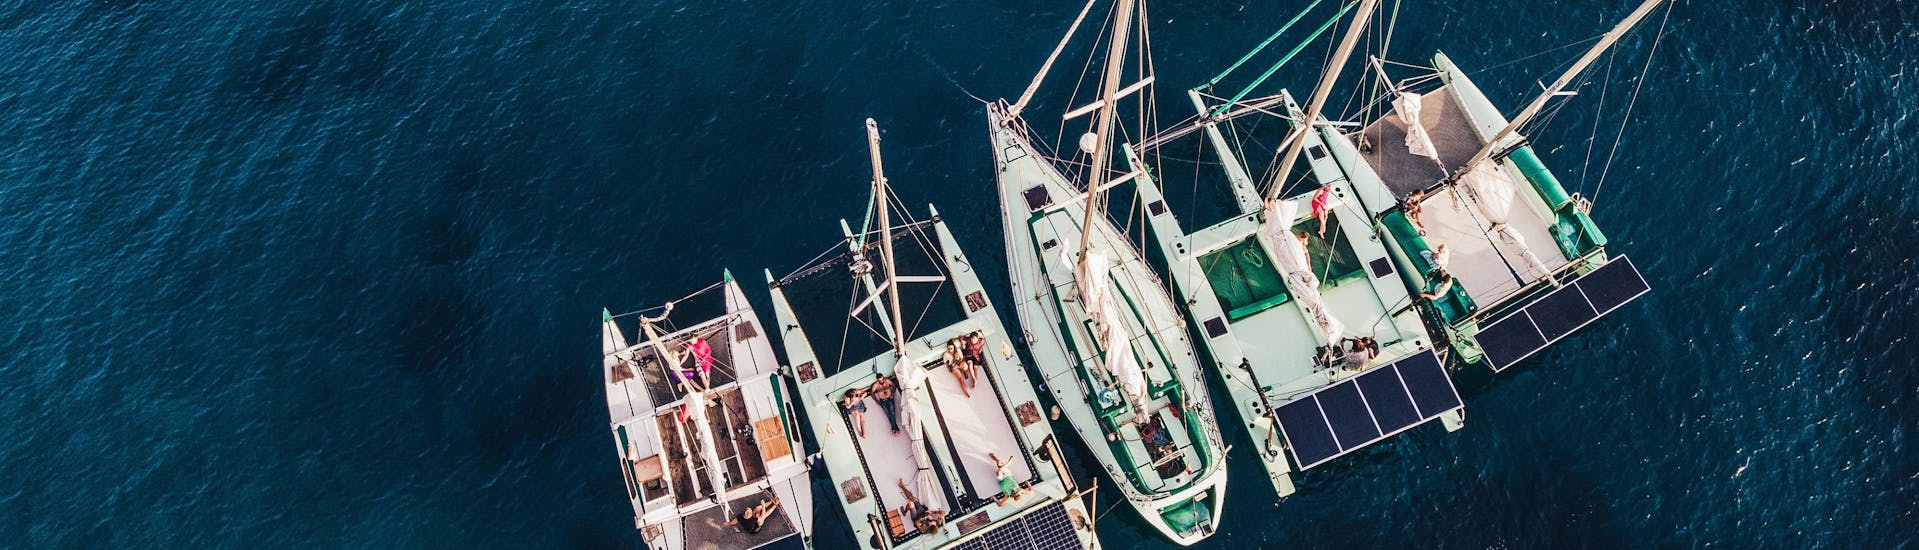 Notre flotte est rassemblée et prête à débuter les balades en bateau avec La Bella Verde Ibiza.